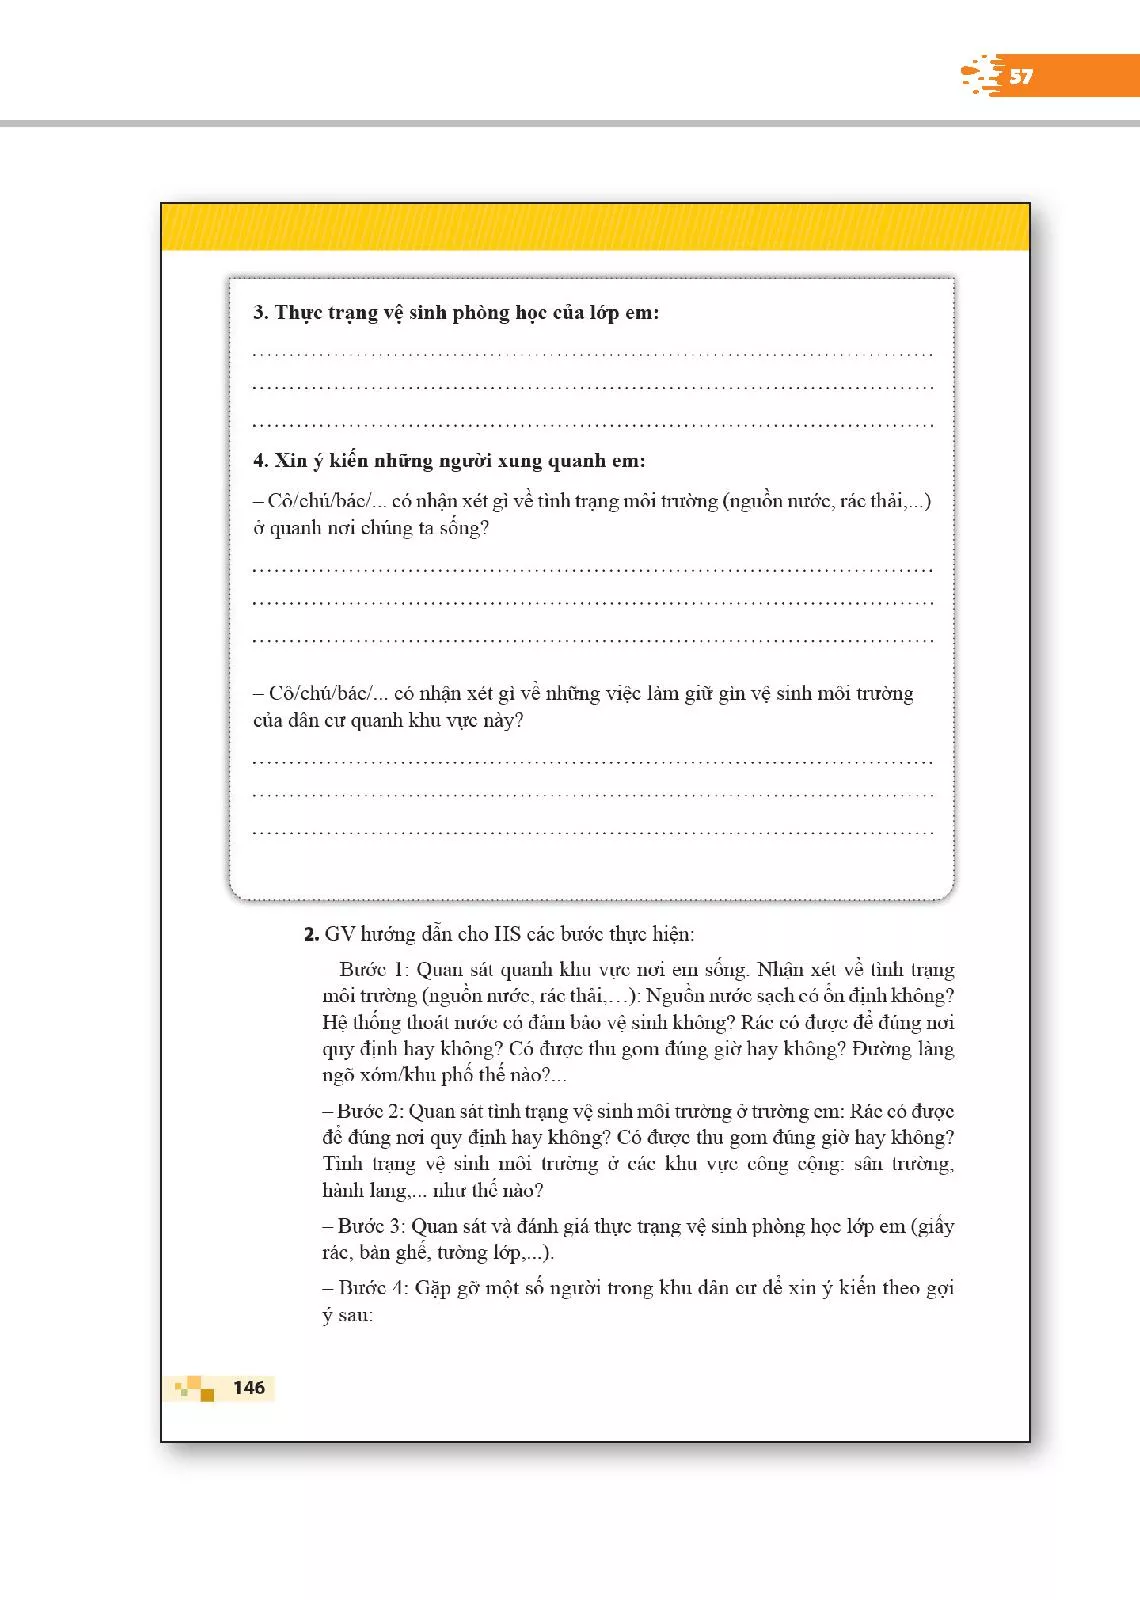 1. Hướng dẫn sử dụng sách giáo viên Hoạt động trải nghiệm 2